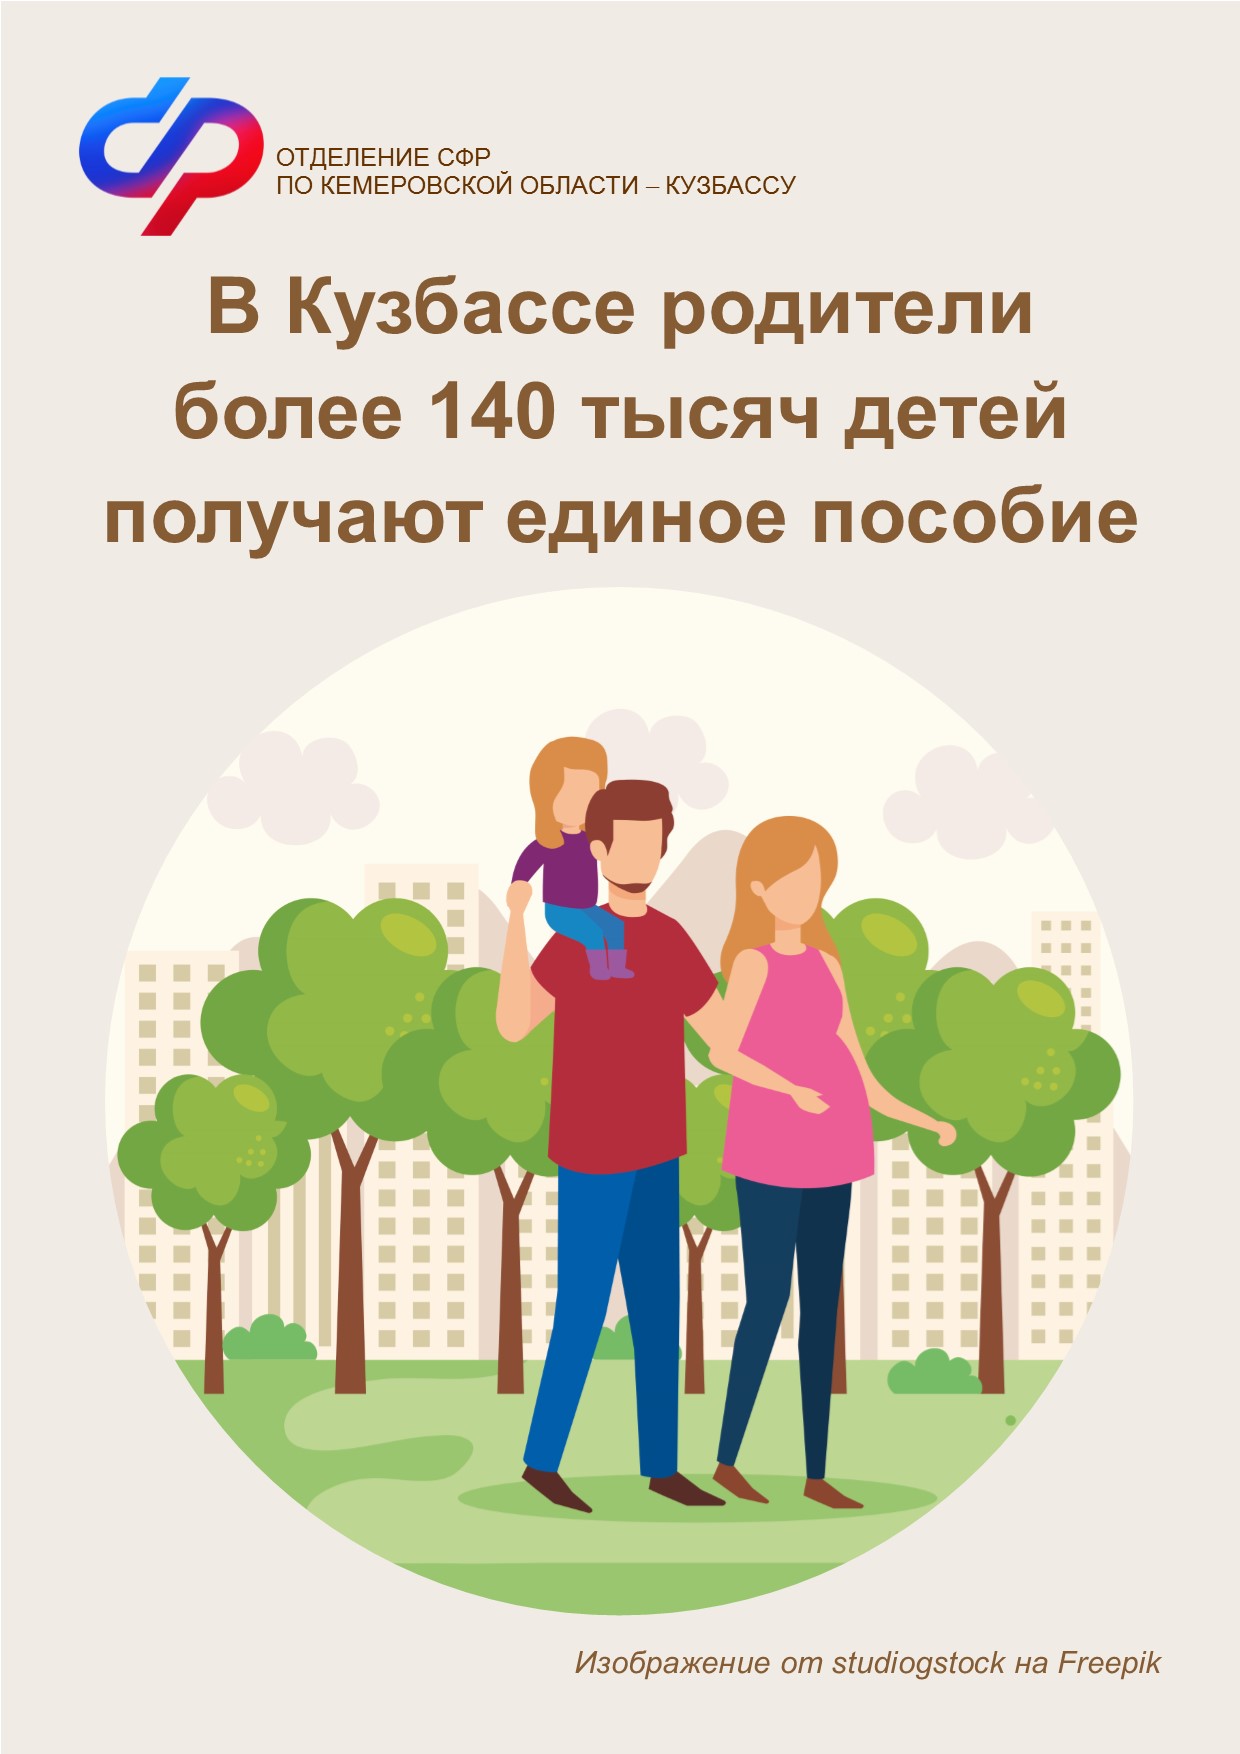 1109 ОСФР Единое пособие в Кемеровской области получают родители более 140 тысяч детей